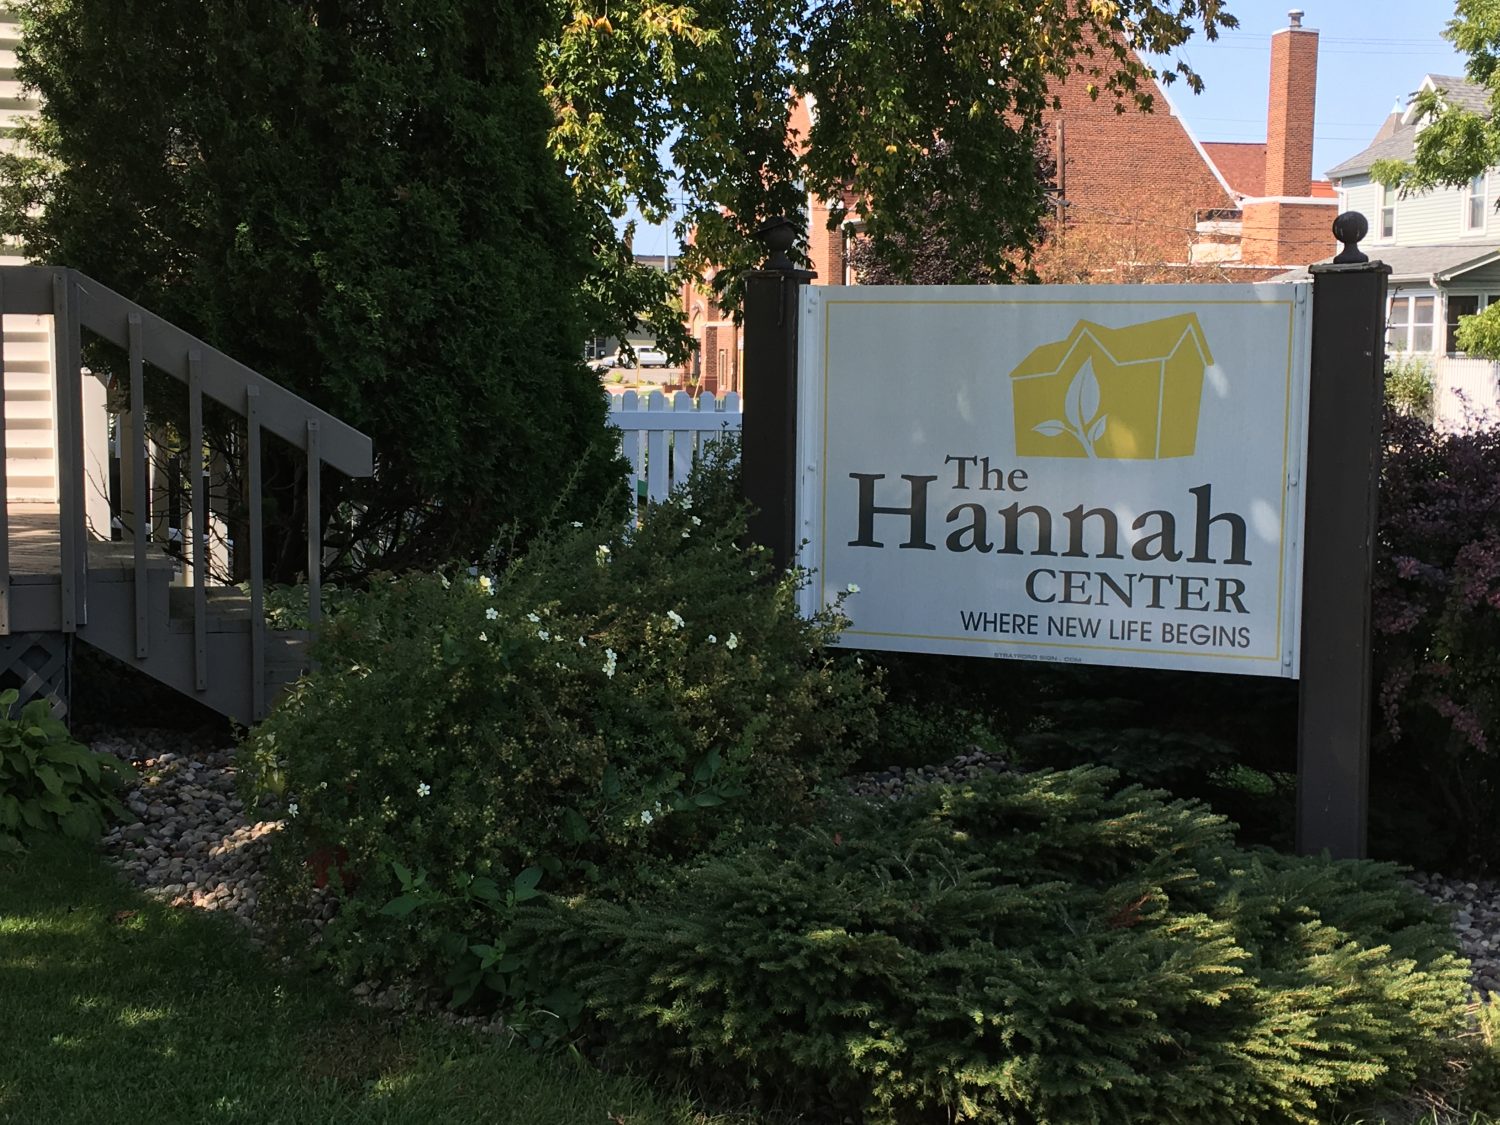 The Hannah Center